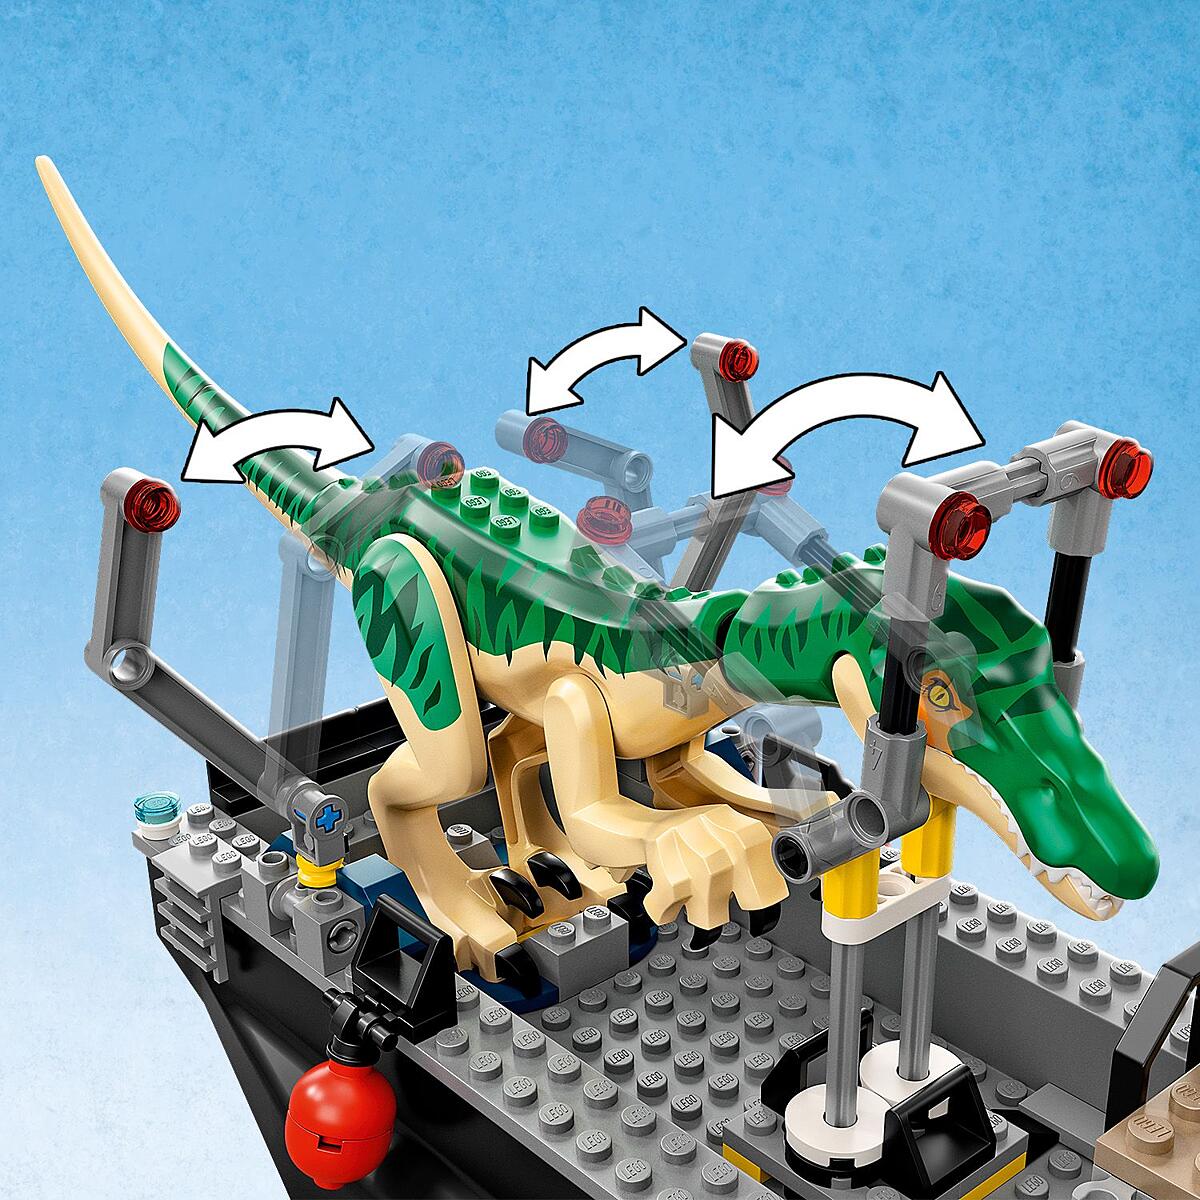 Transport the dinosaur